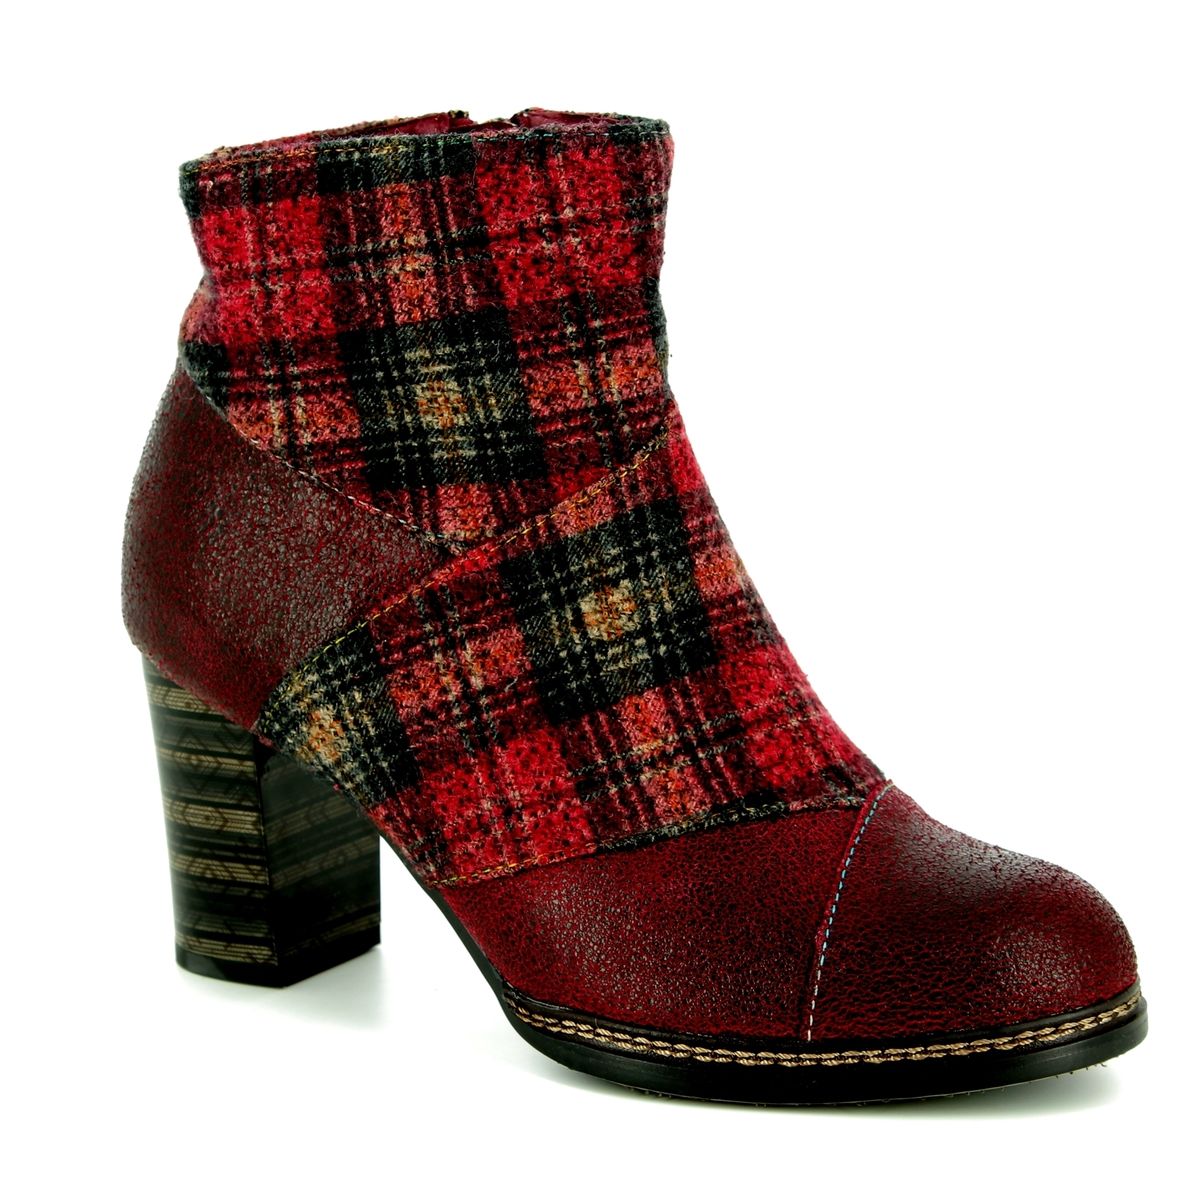 hoeveelheid verkoop Vervullen Guggenheim Museum Laura Vita Elea 018 8503-80 Dark Red ankle boots